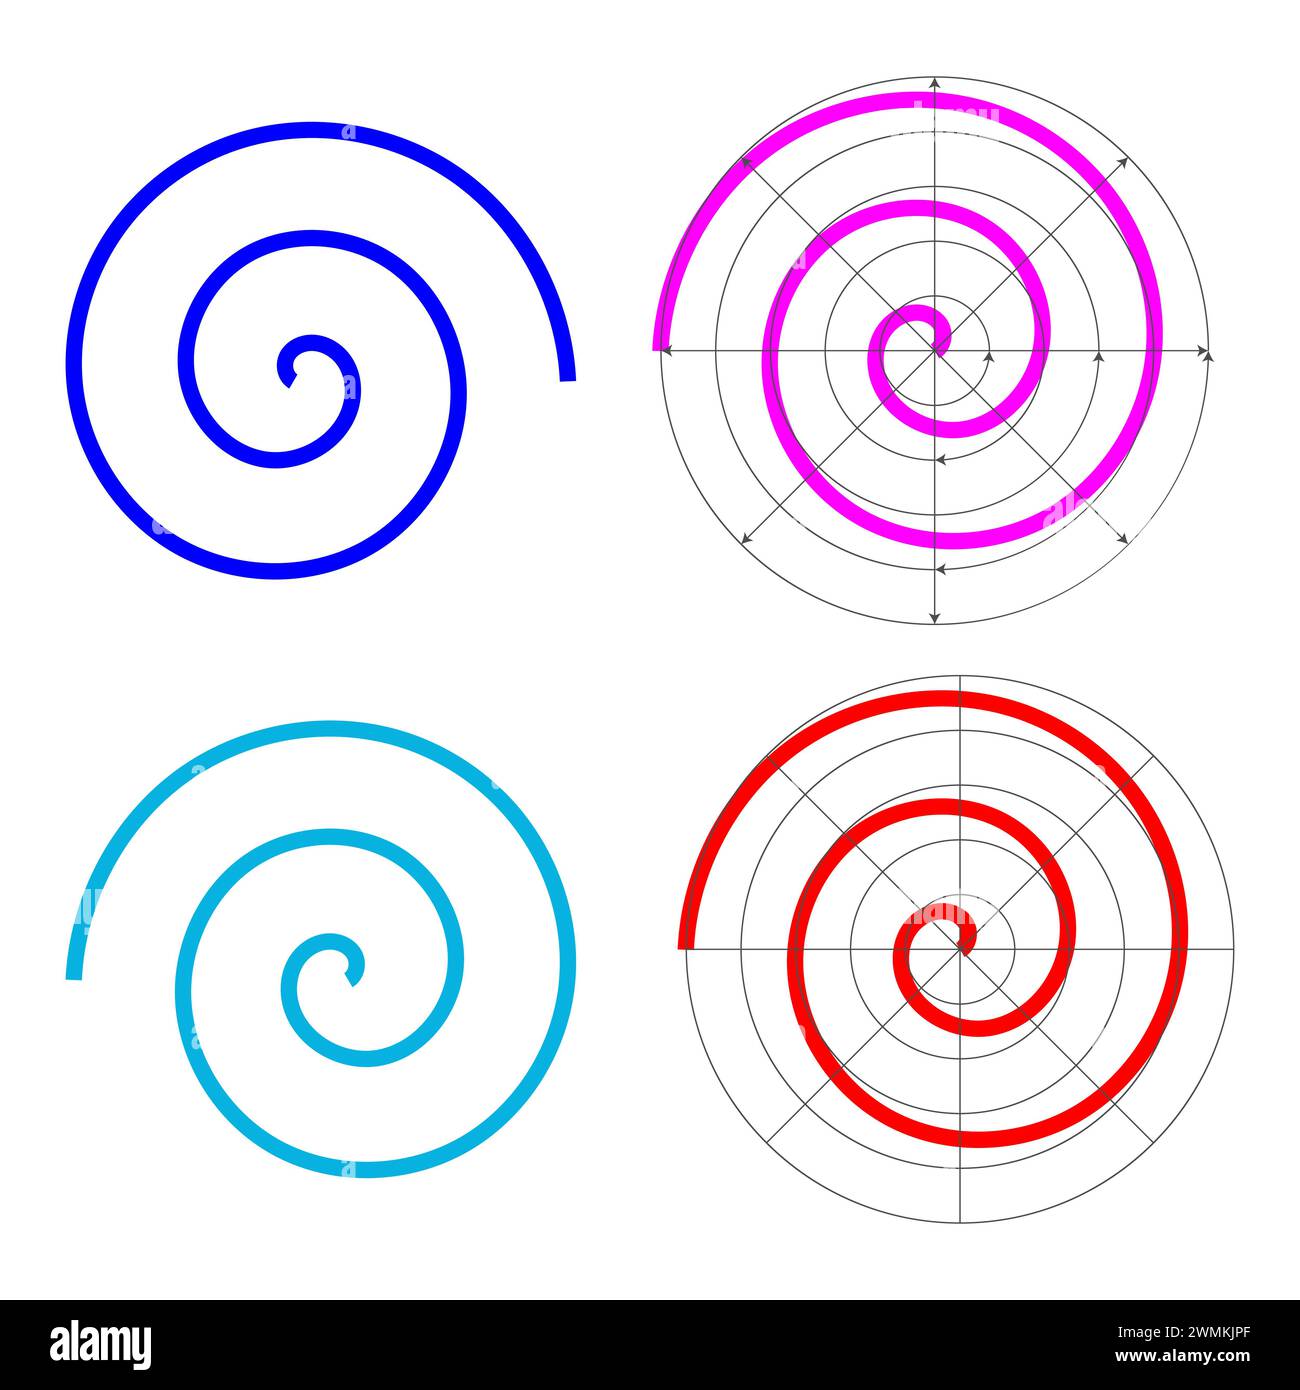 Spirale aritmetica archimedea, che ruota con velocità angolare costante su un grafo polare. Illustrazione Vettoriale